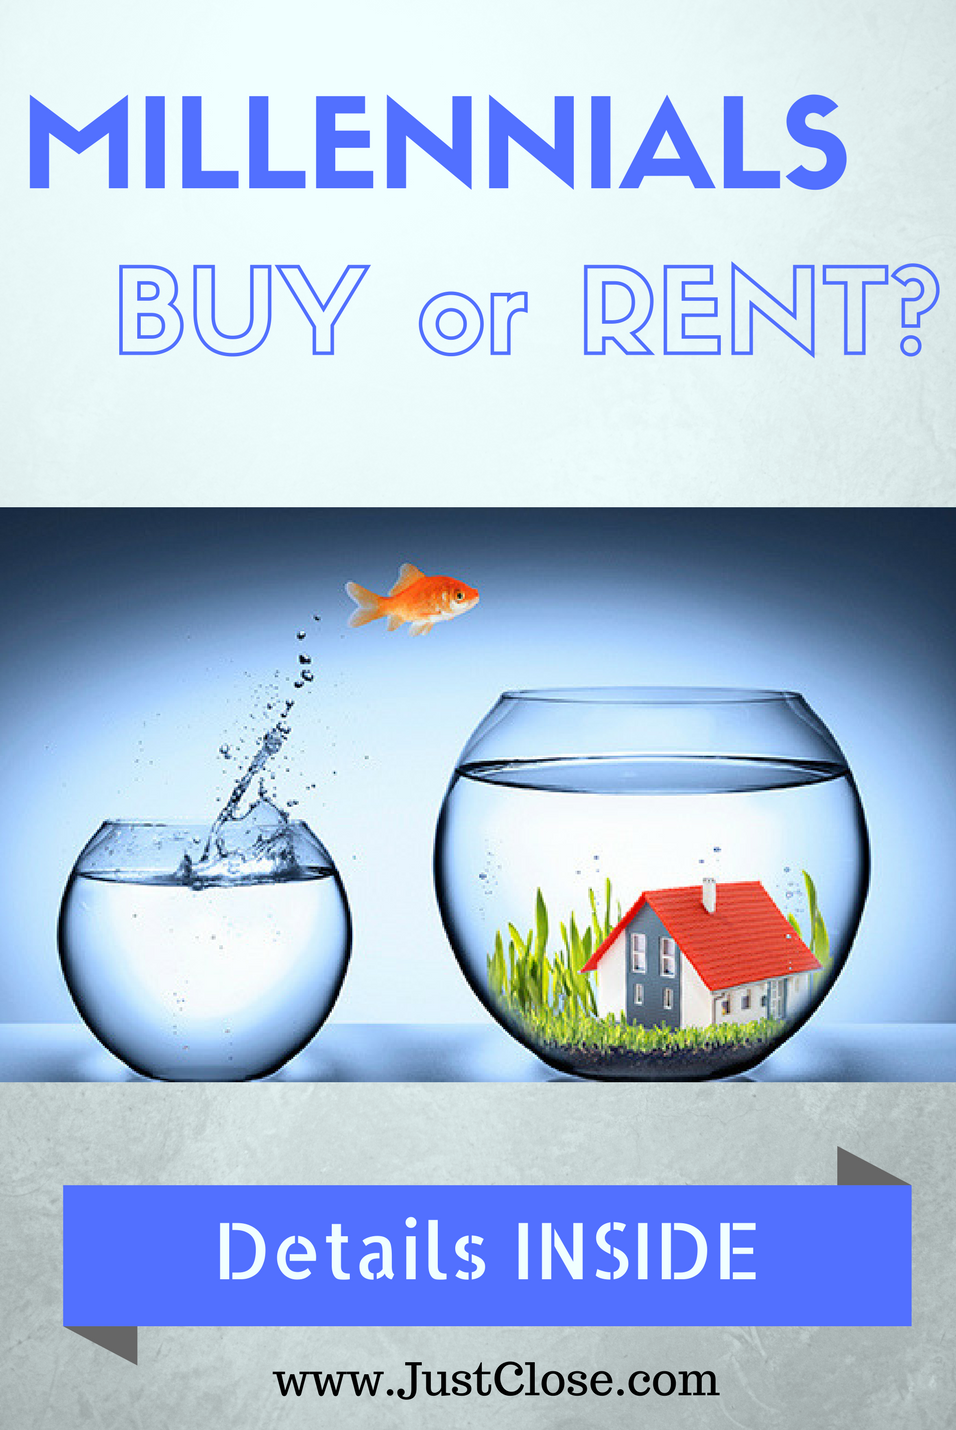 Millennials buy or rent